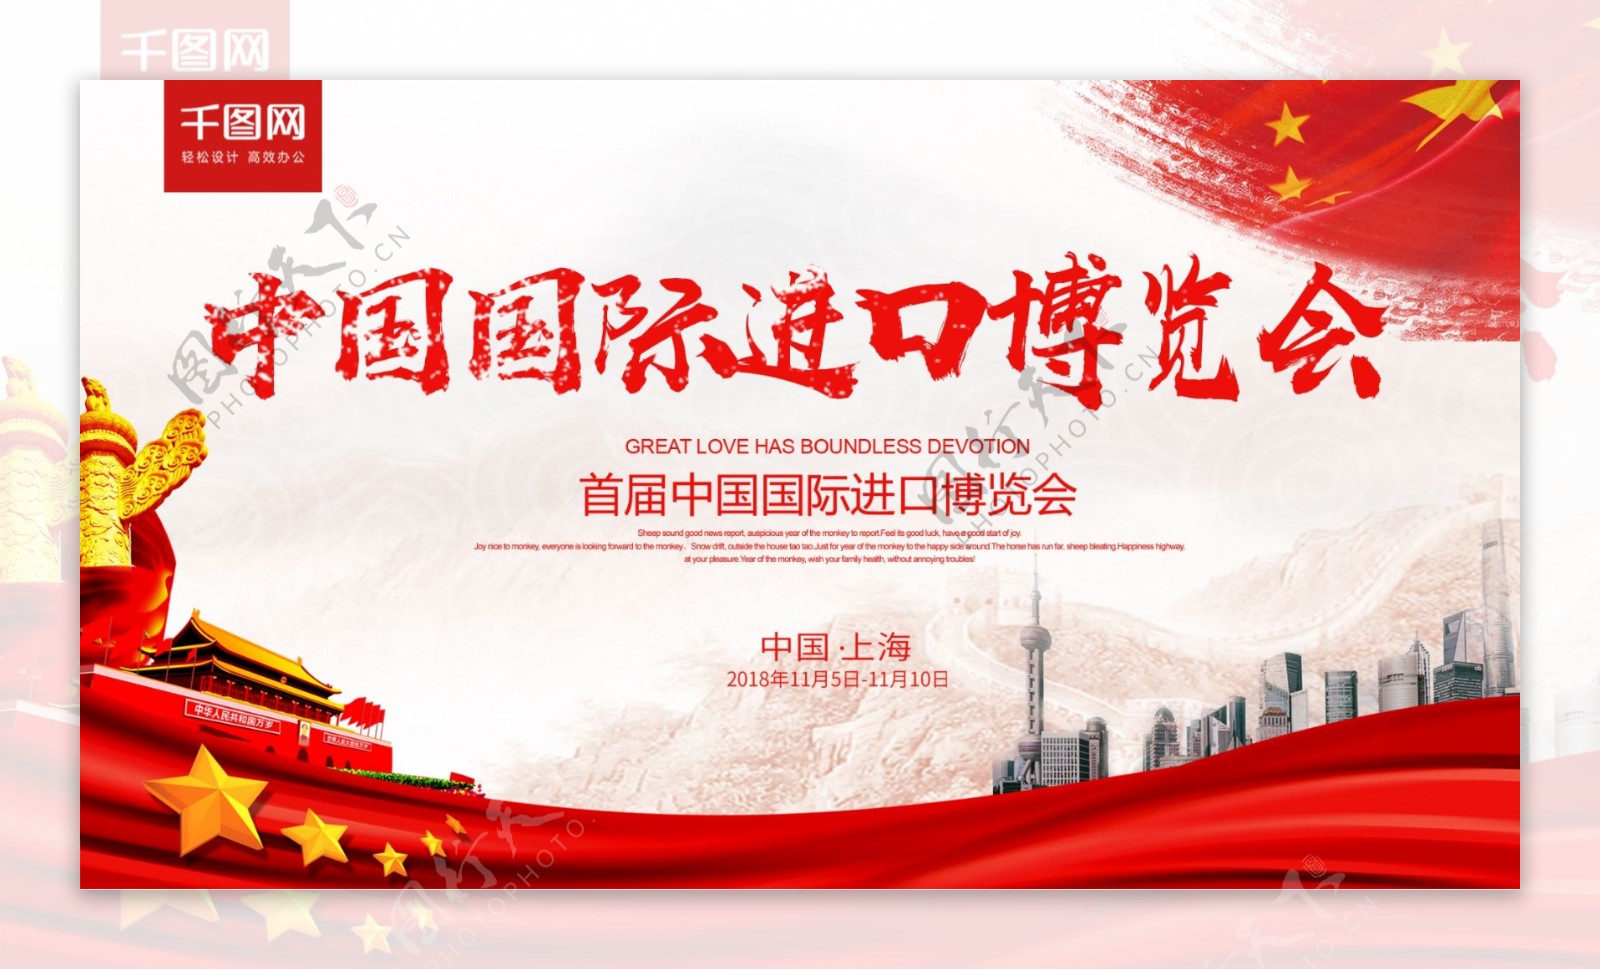 大气党建风中国国际进口博览会